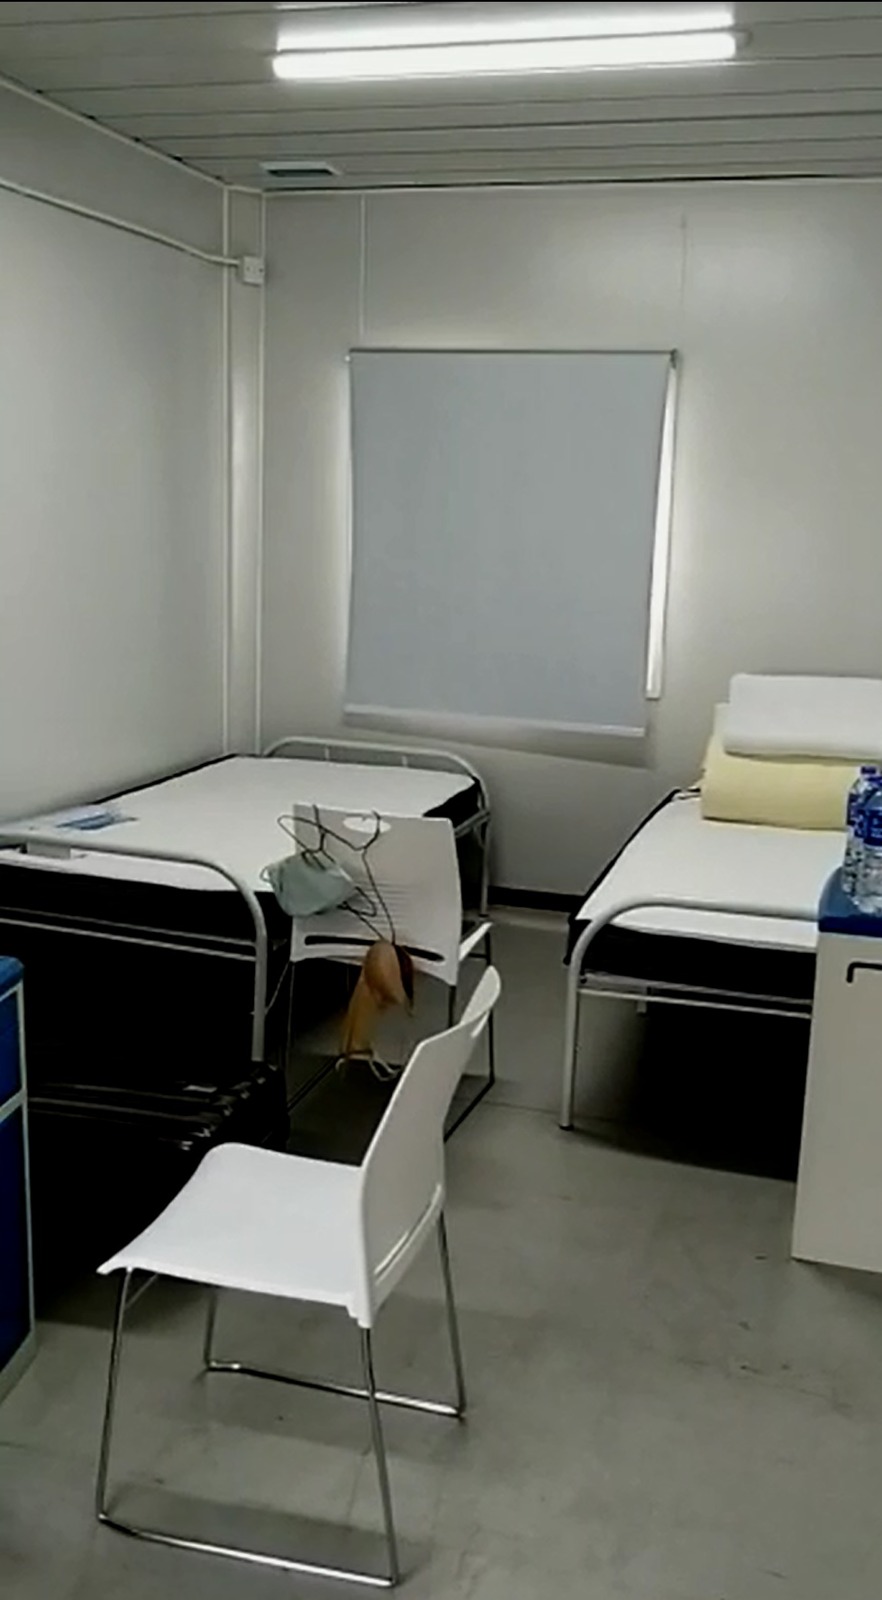  林太指青衣「方舱医院」房间提供舒适的名牌牀褥。 受访者提供